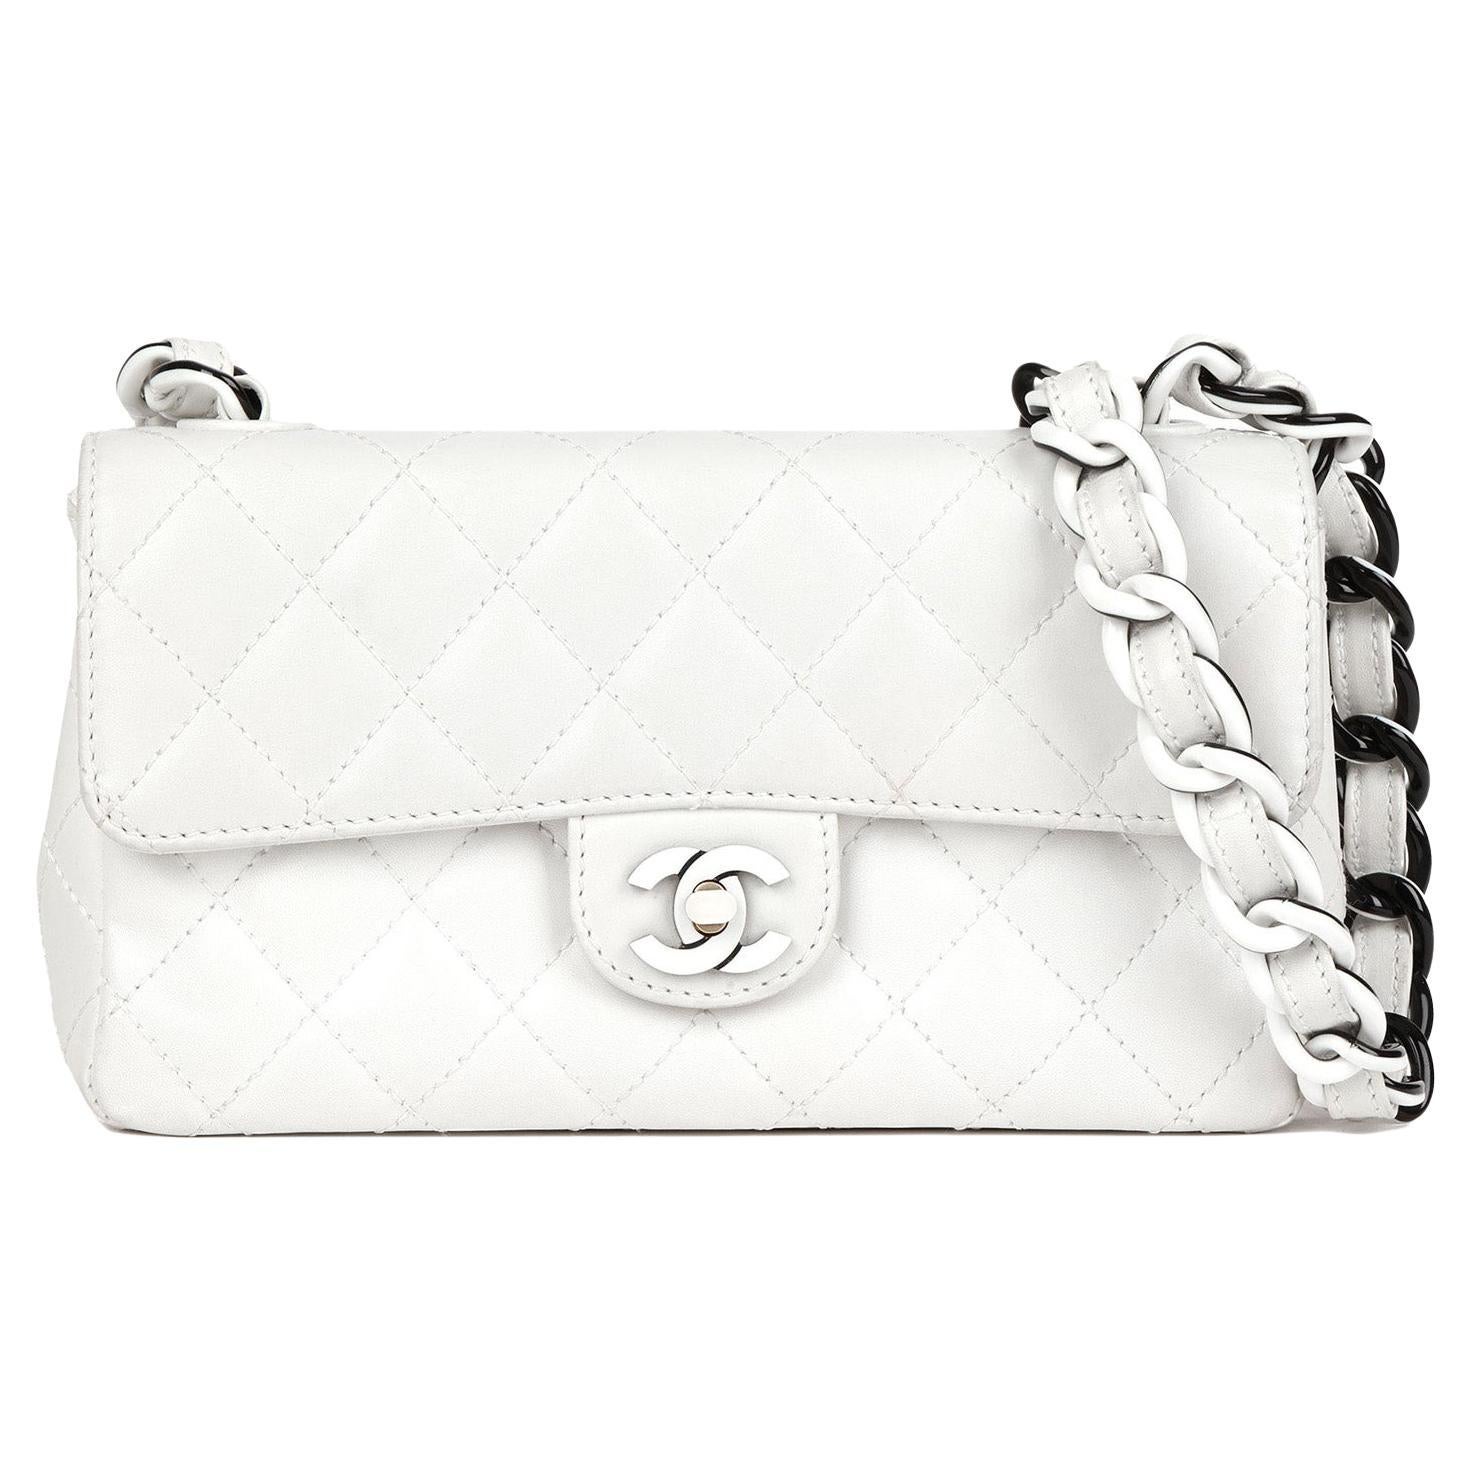 Chanel Black Quilted Suede Handle Handbag